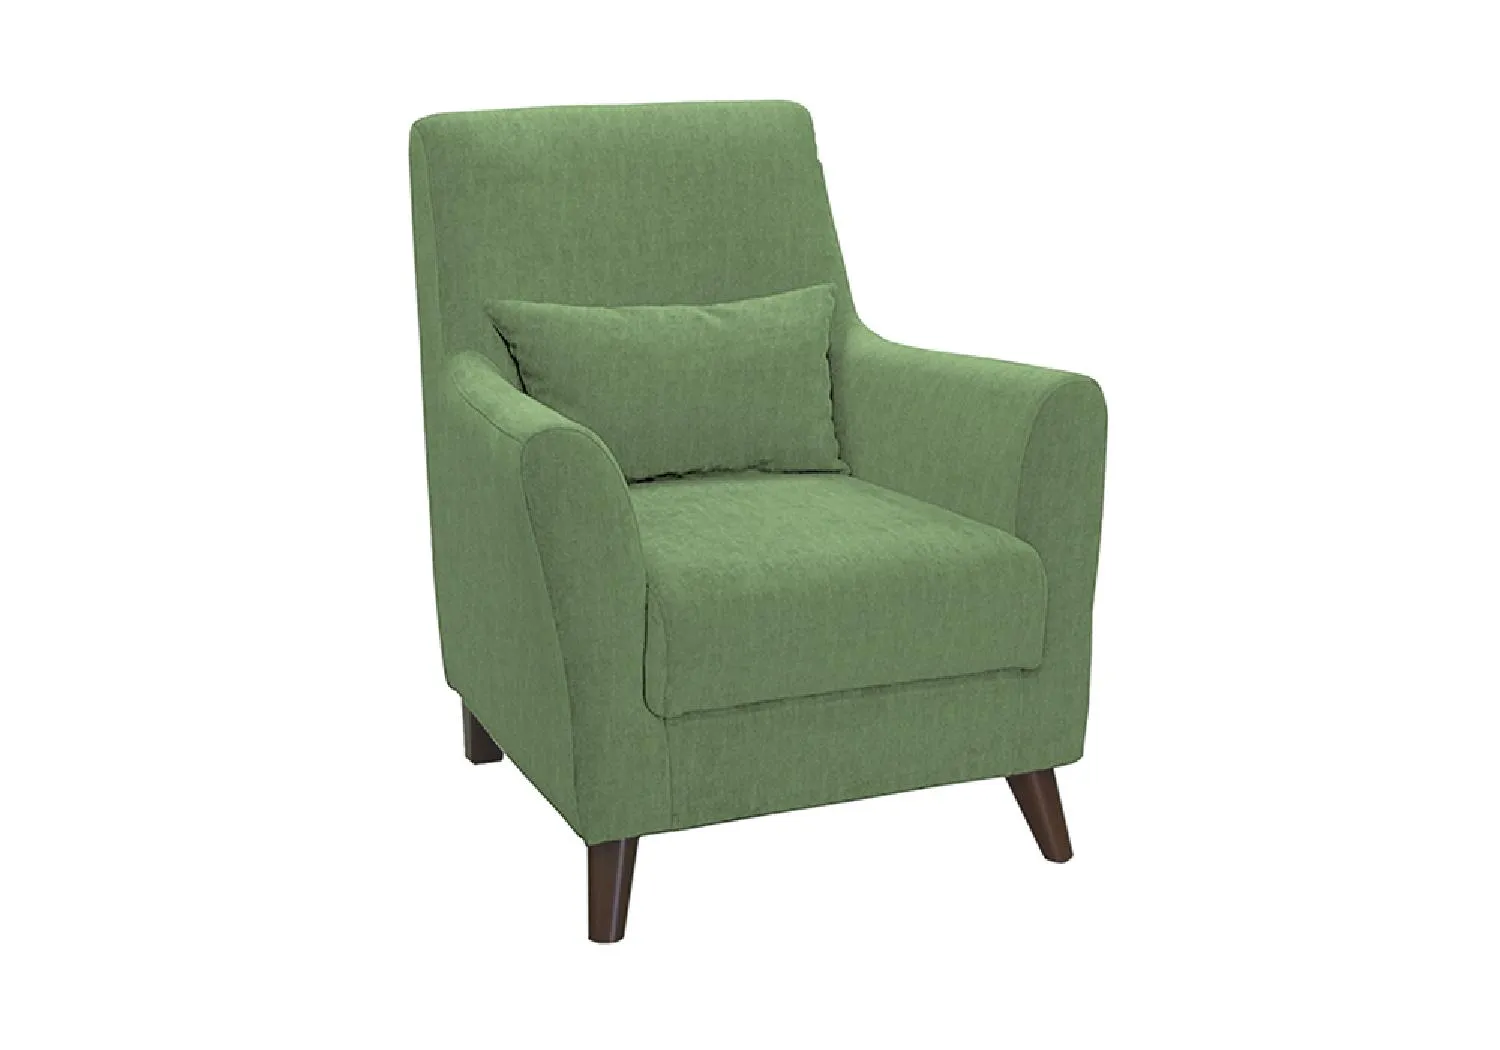 Кресло Либерти зеленое